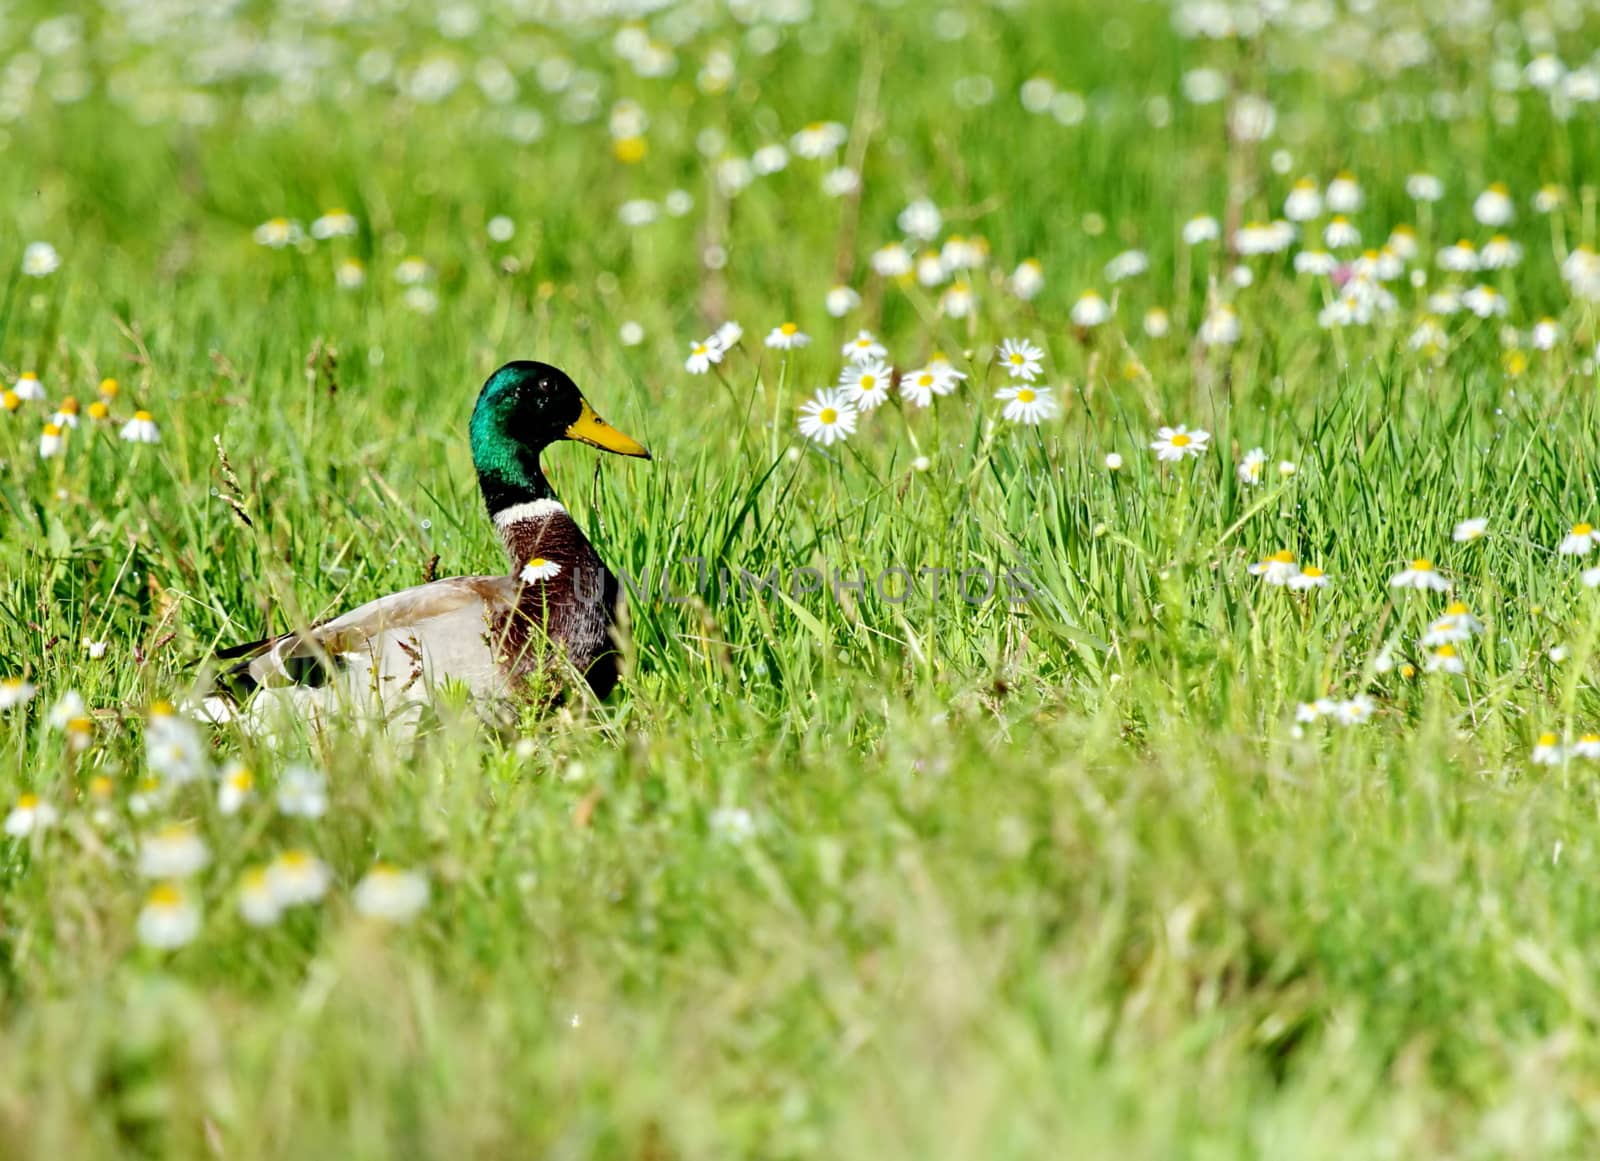 Male mallard duck walking in grassy pond between white flowers